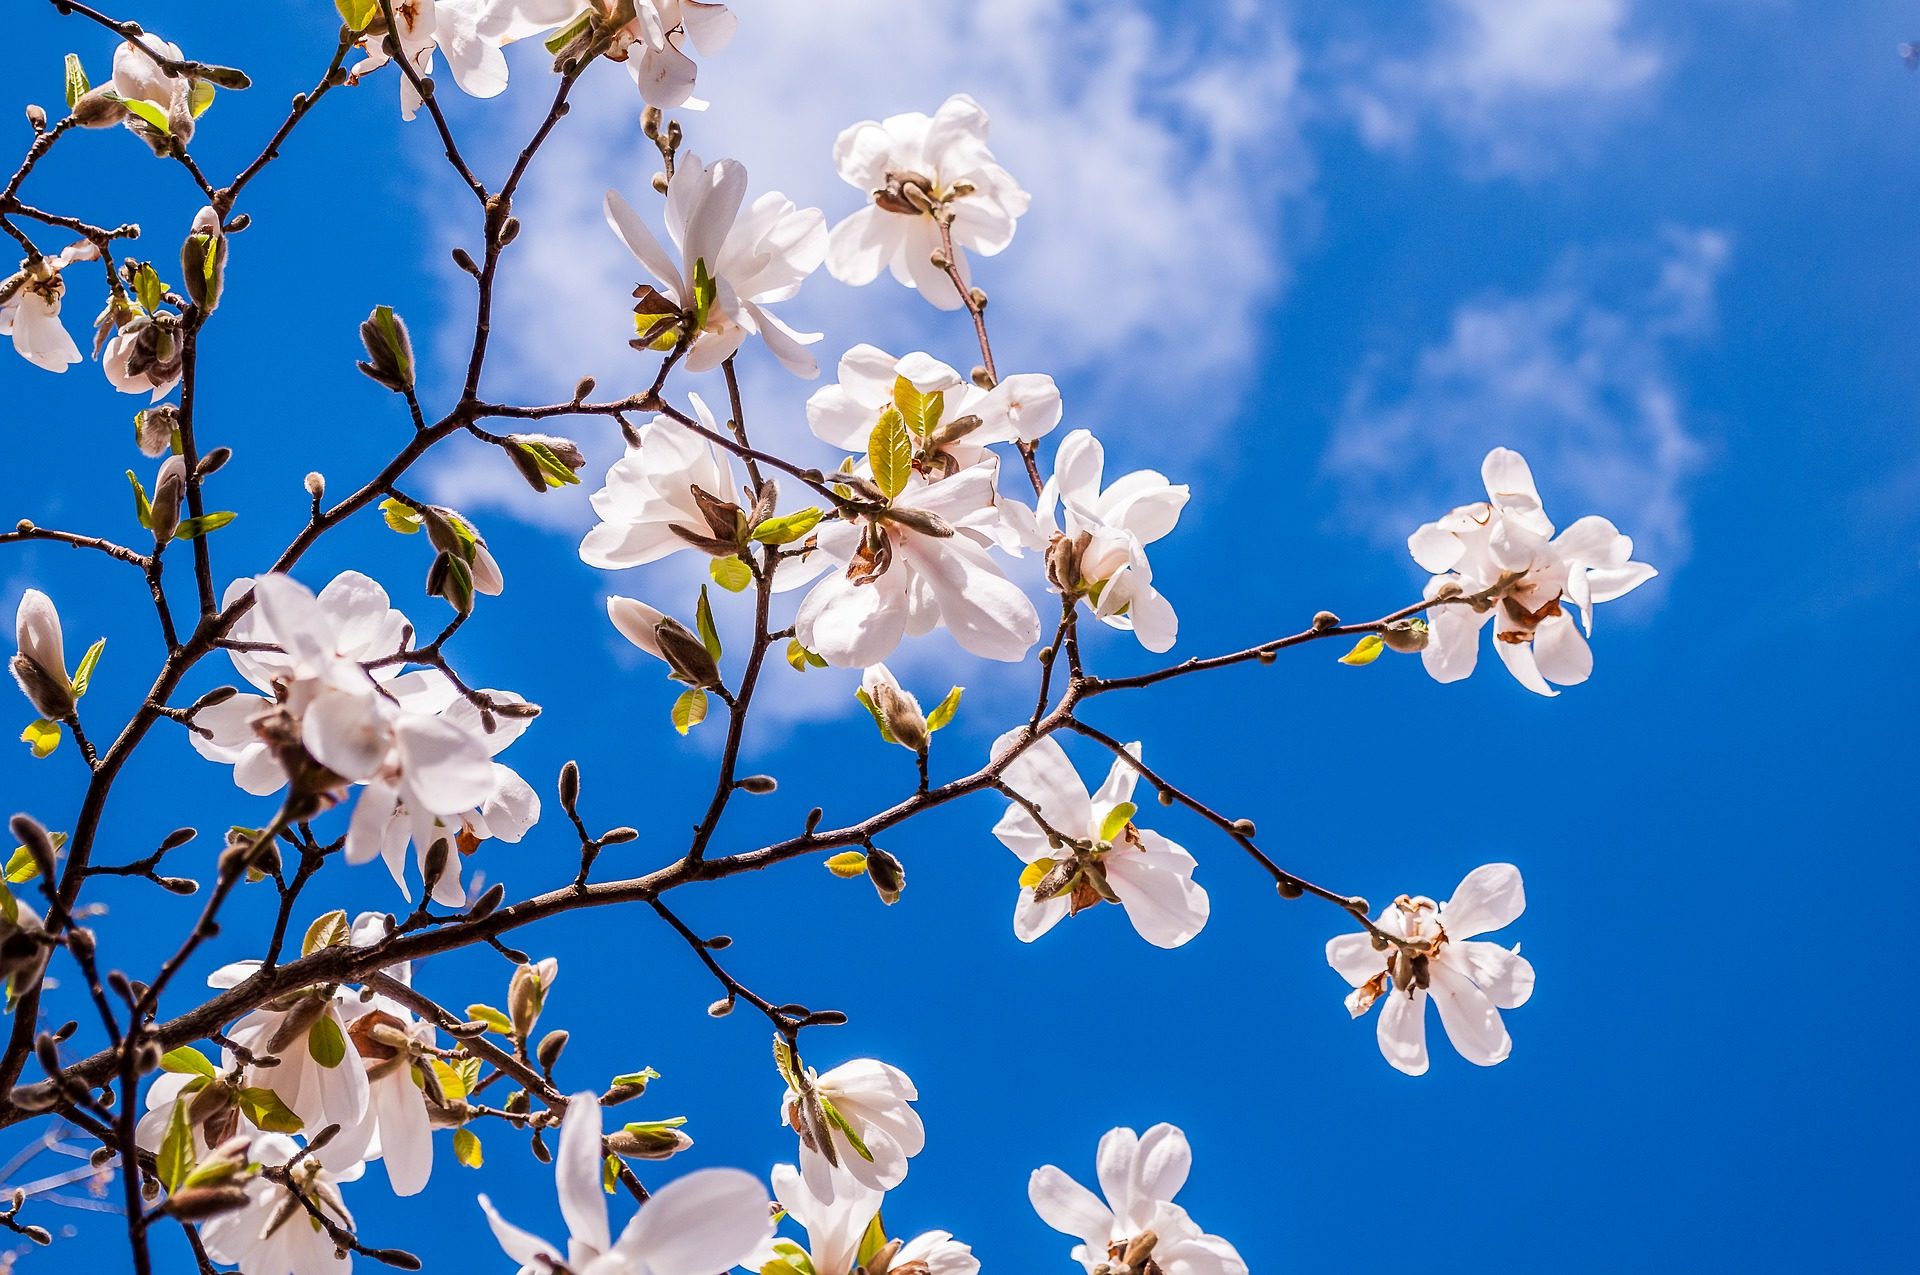 kwitnąca magnolia na tle błękitnego nieba. Co robi copywriter, by poruszyć ludzi?